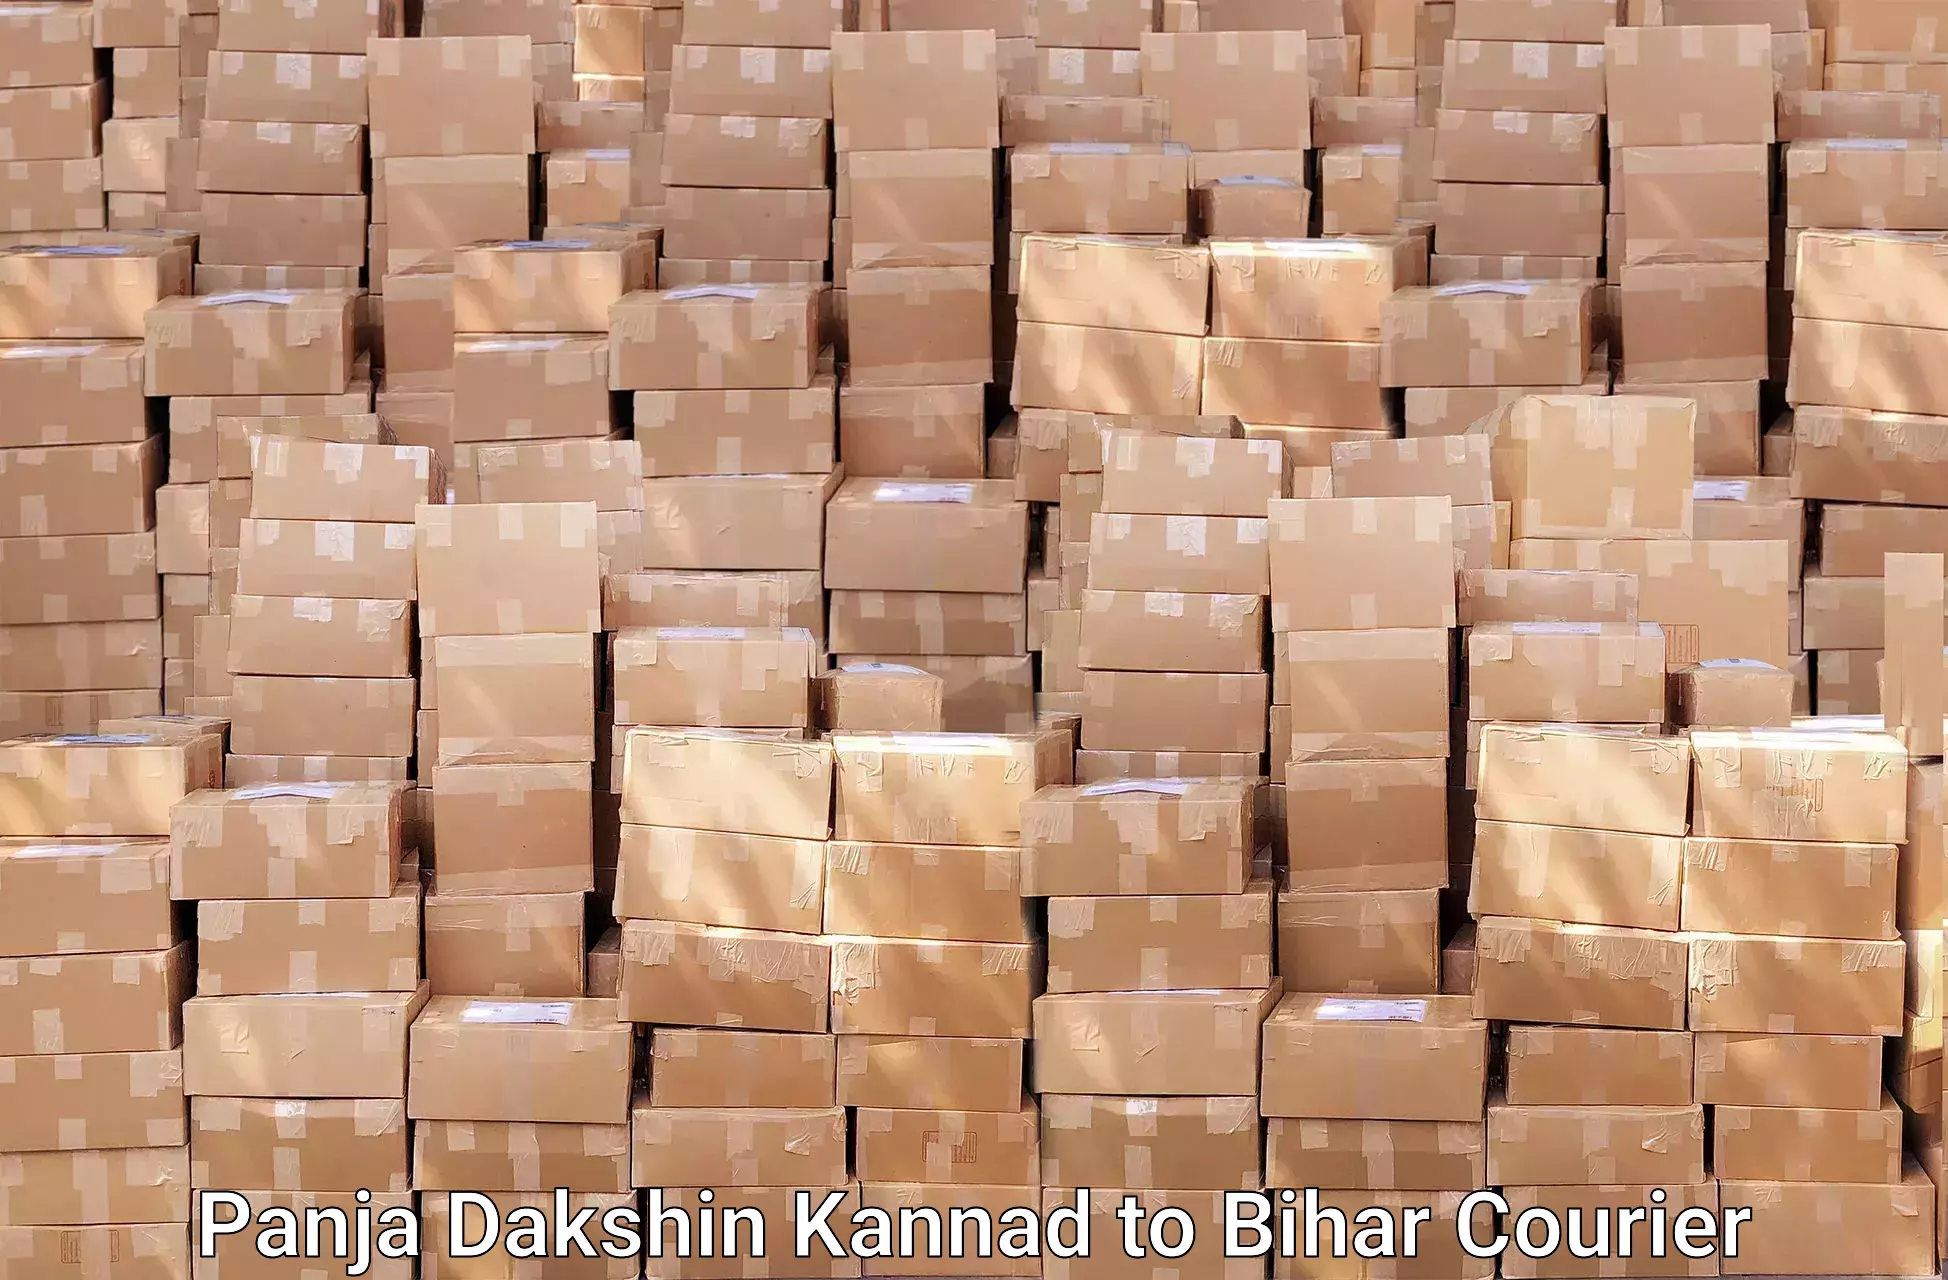 Furniture moving strategies Panja Dakshin Kannad to Bihar